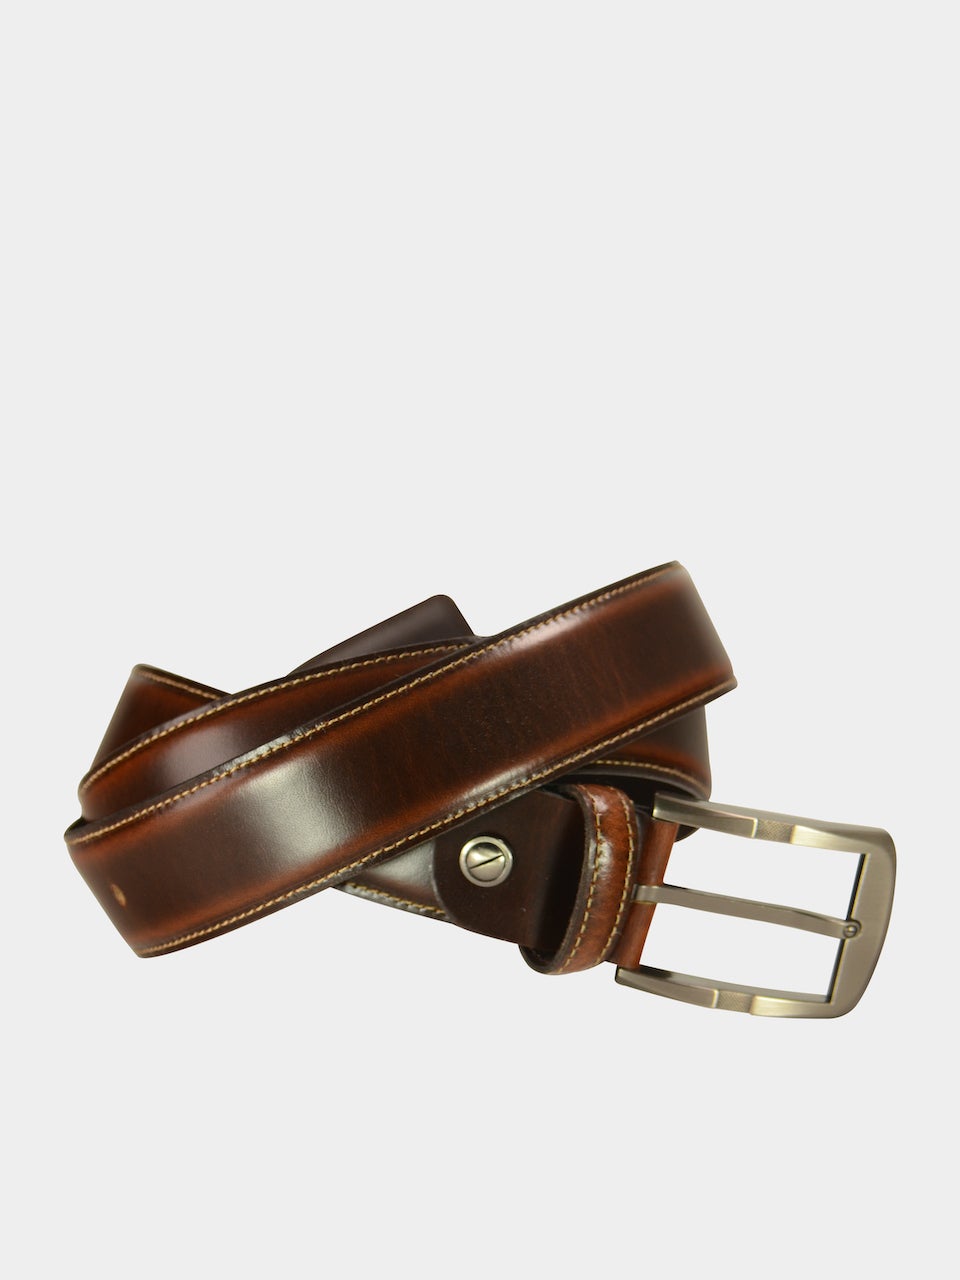 Barjeel Uno Men Slim Belts in Brown Leather